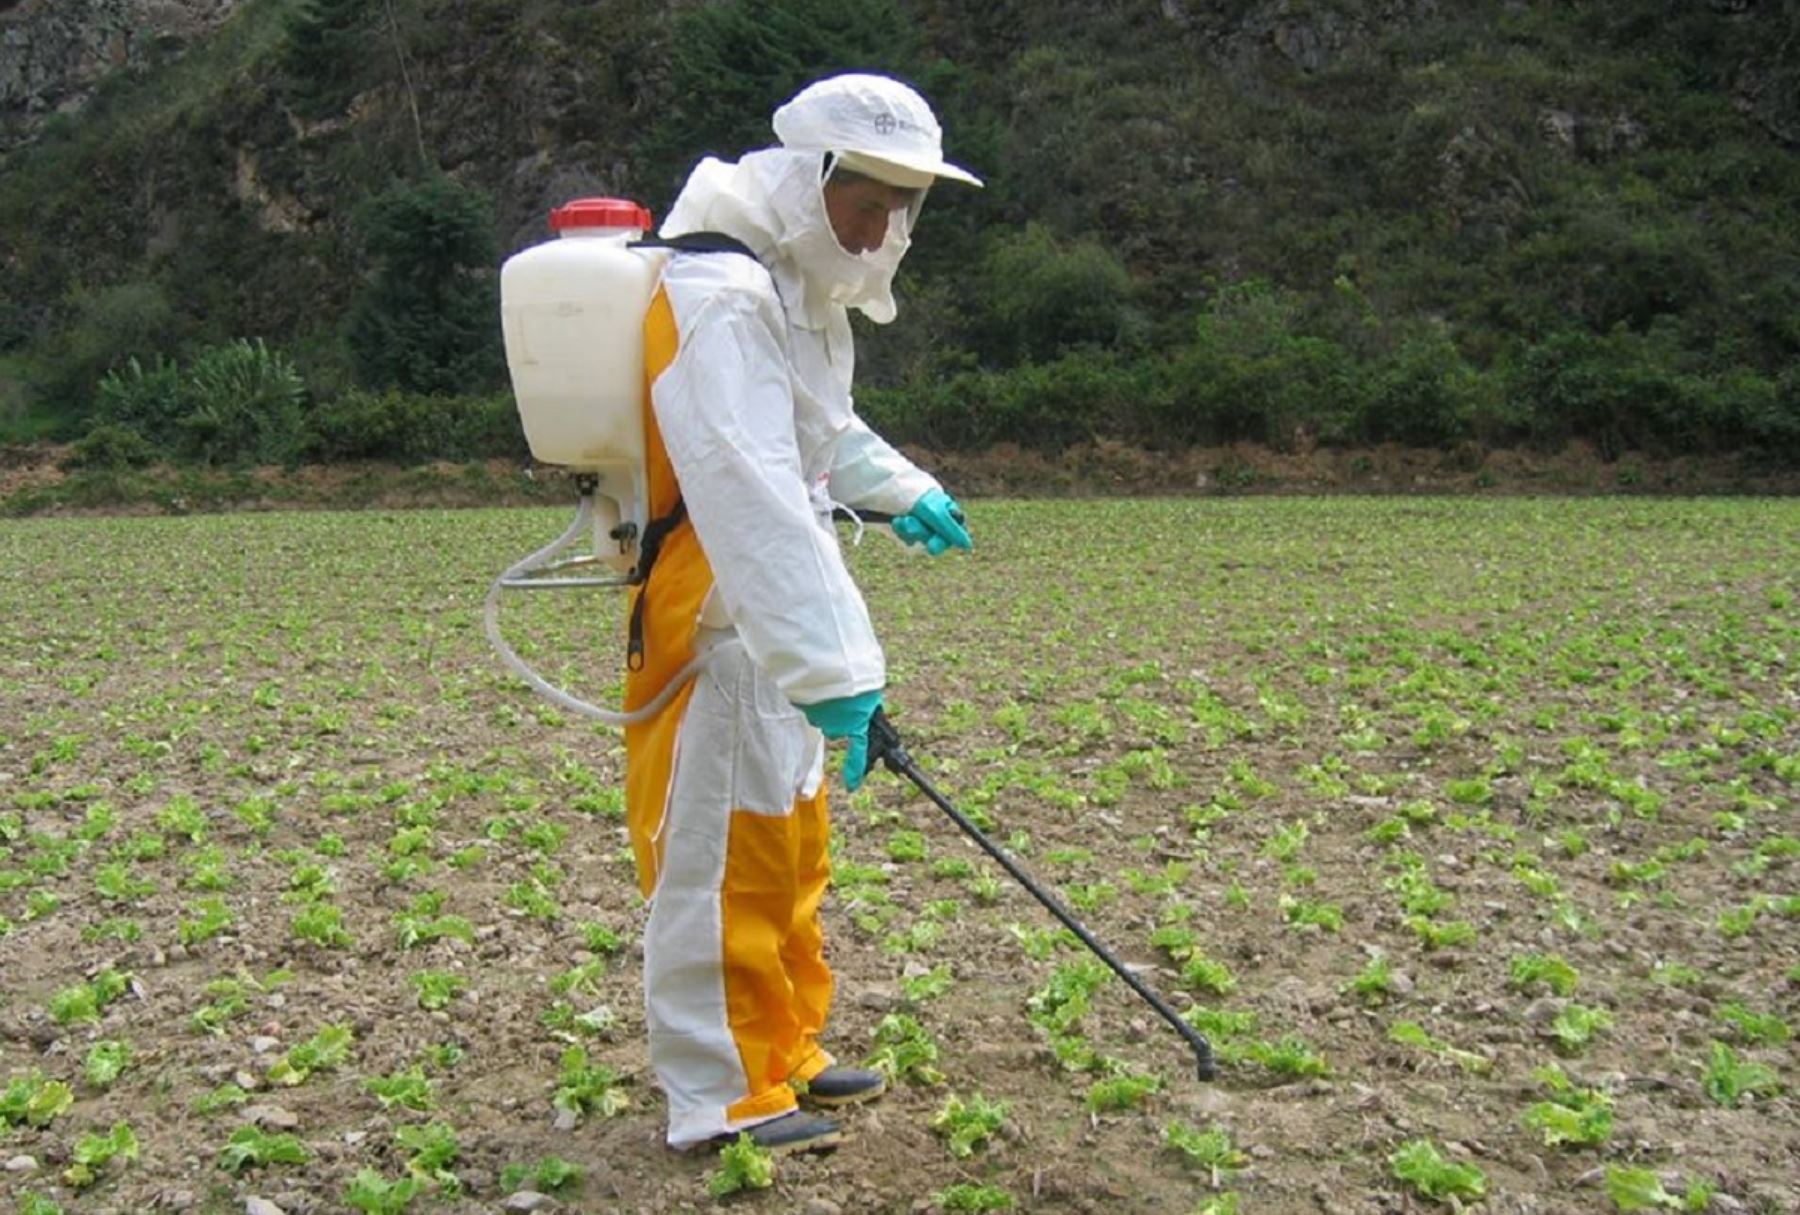 Capacitan a 27,000 agricultores al año sobre uso de productos fitosanitarios